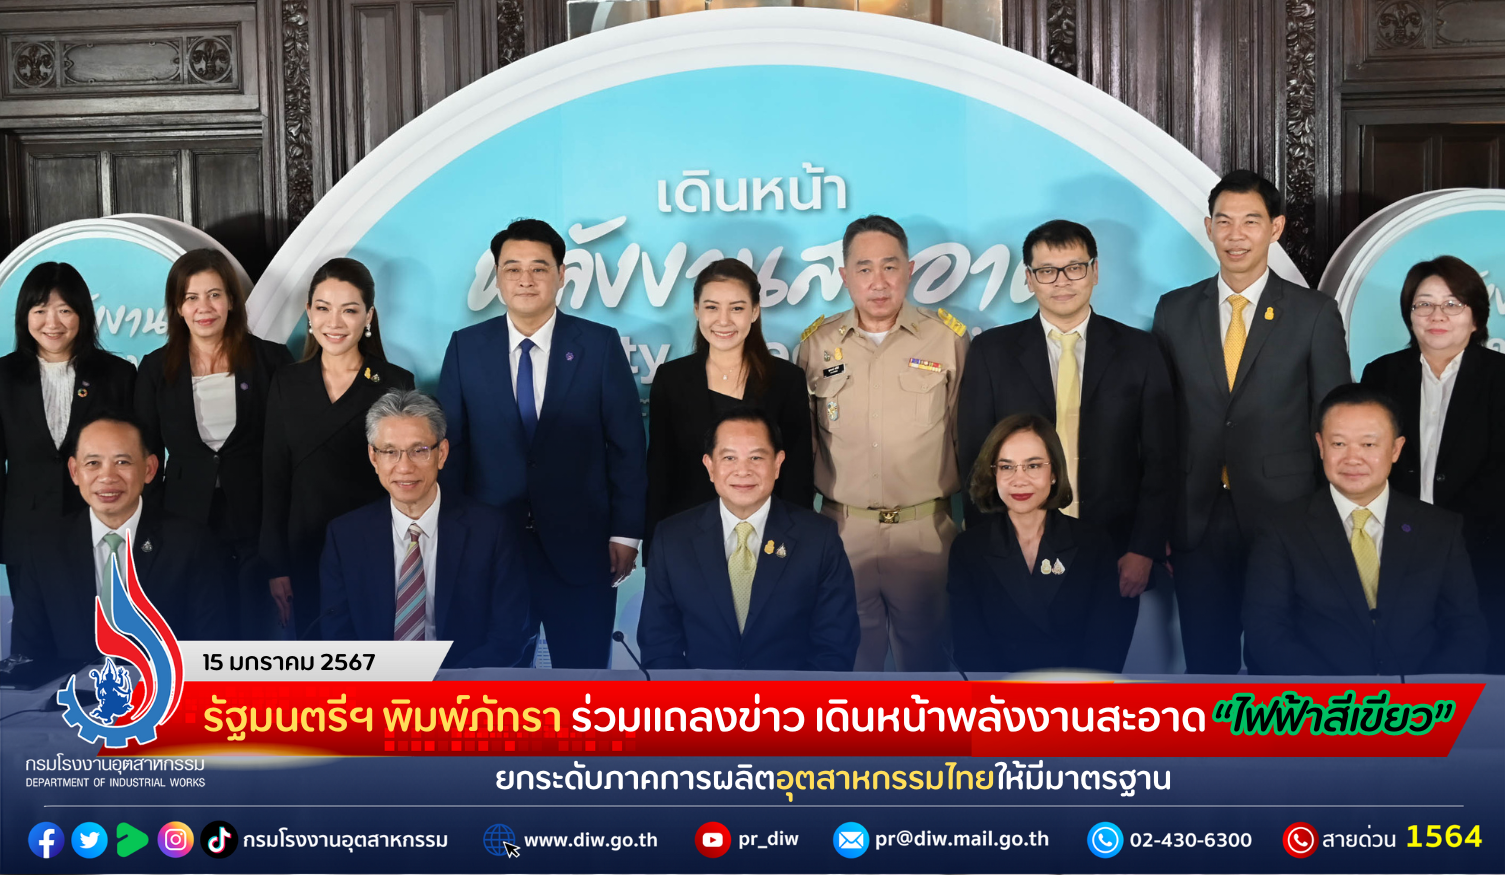 You are currently viewing รัฐมนตรีฯ พิมพ์ภัทรา ร่วมแถลงข่าว เดินหน้าพลังงานสะอาด “ไฟฟ้าสีเขียว” ยกระดับภาคการผลิตอุตสาหกรรมไทยให้มีมาตรฐาน